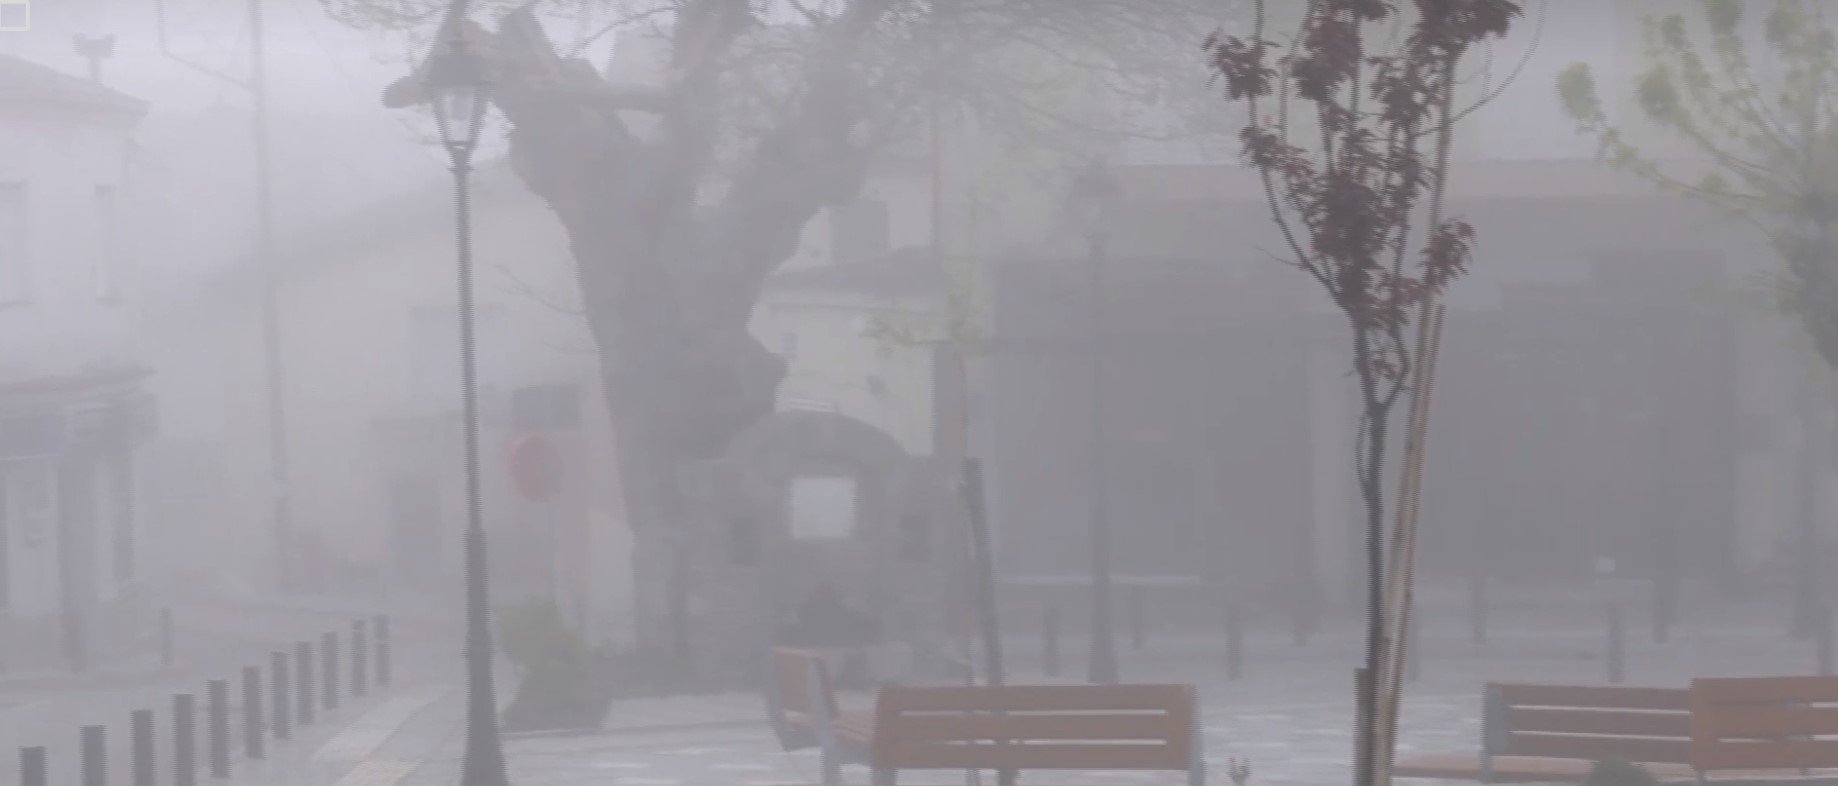 Θεσσαλονίκη: Πρωινή ομίχλη προκάλεσε προβλήματα στο αεροδρόμιο